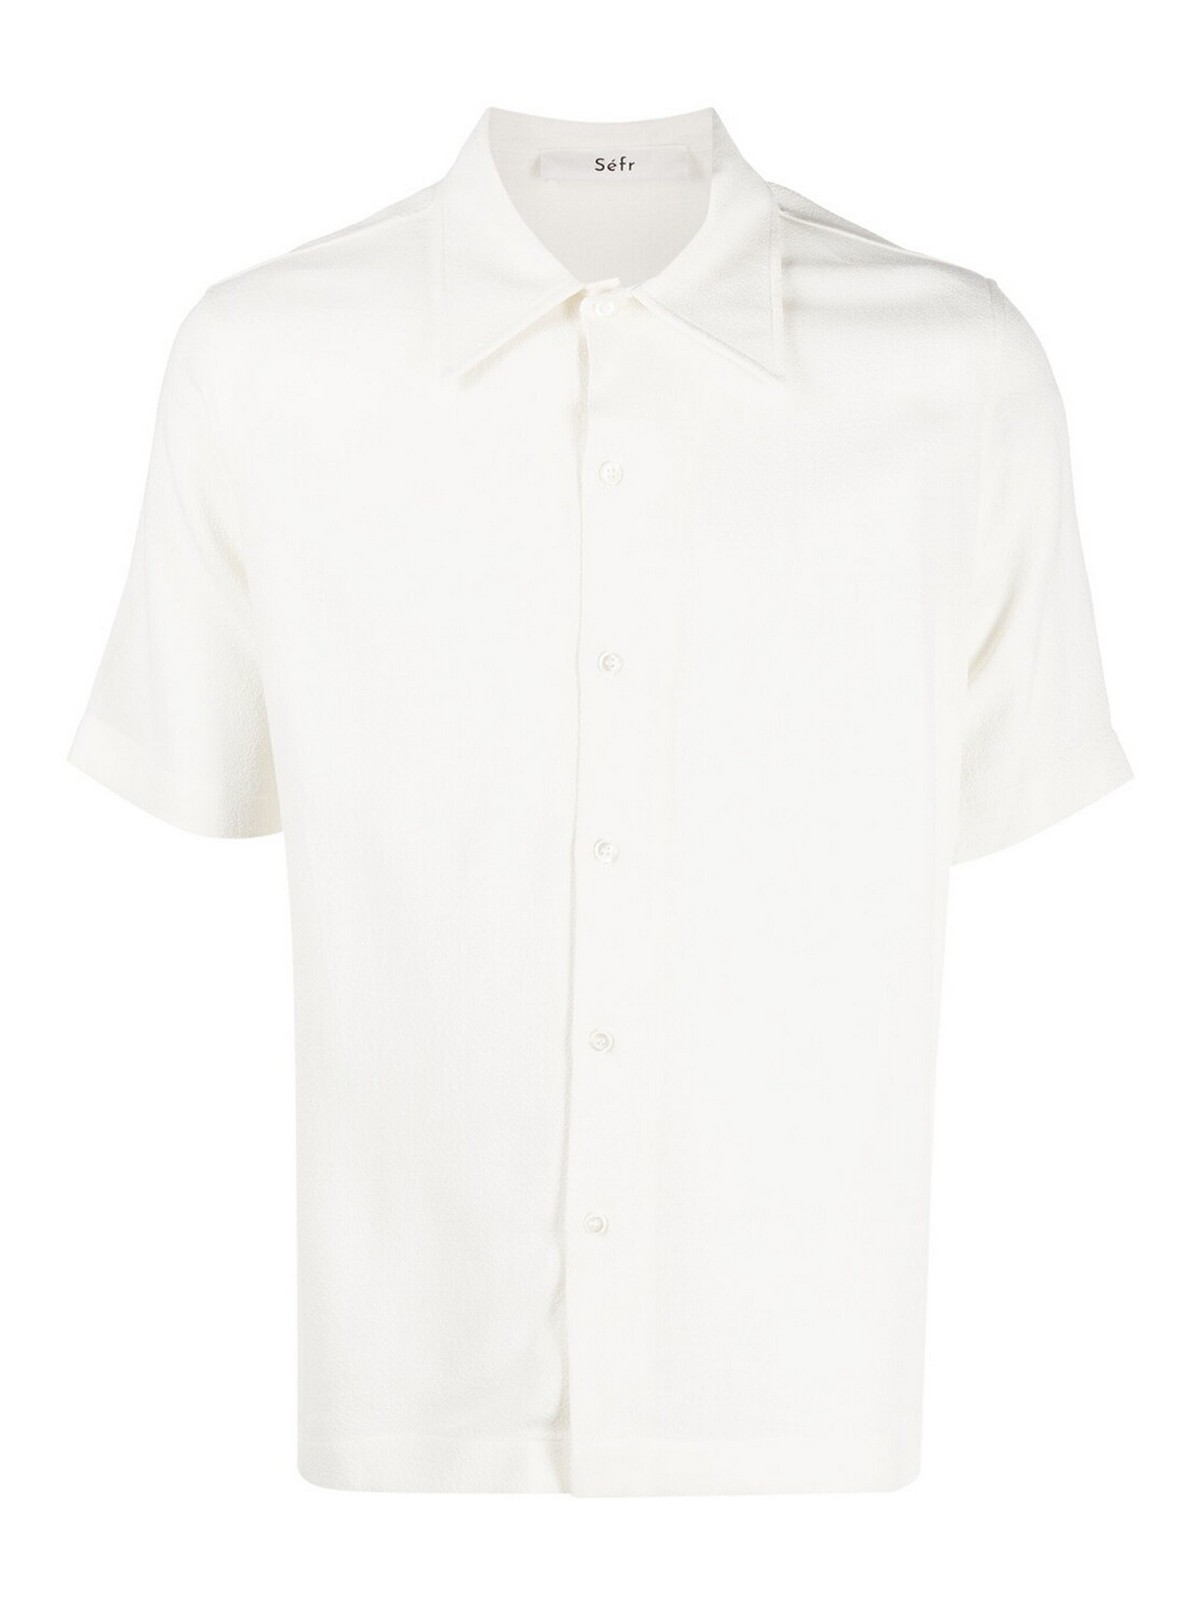 Séfr Suneham Crpe Shirt In White